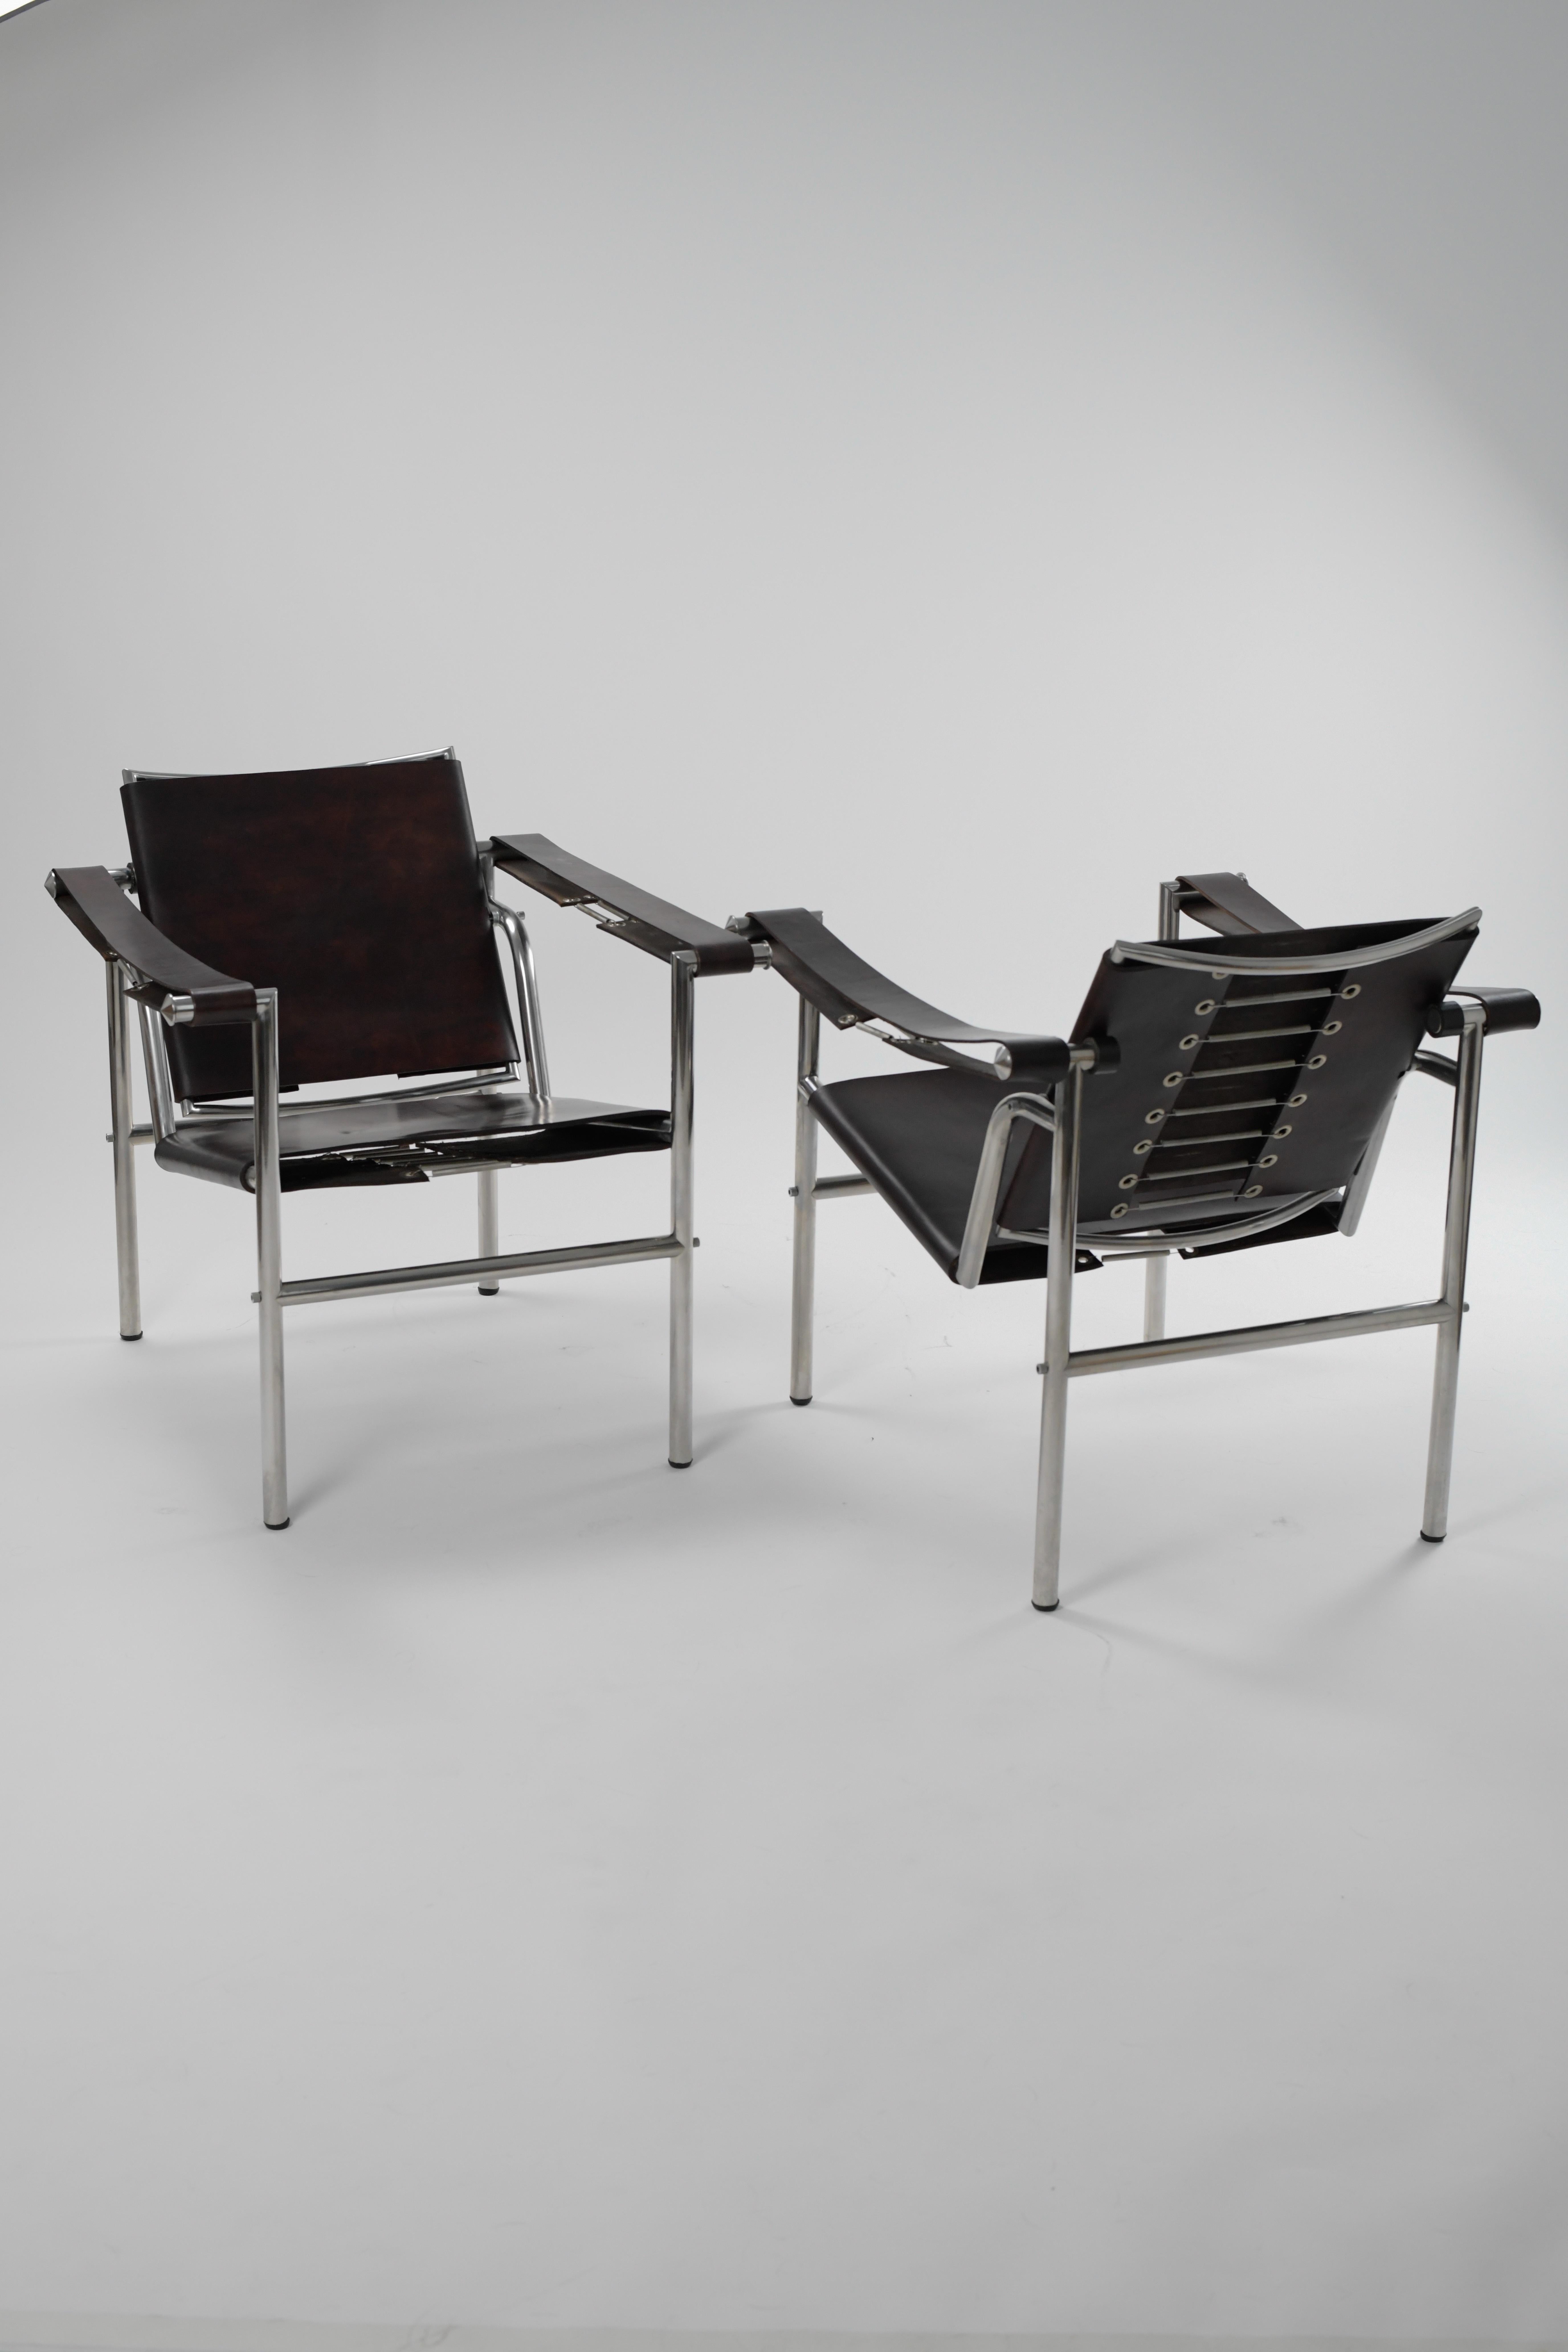 Atemberaubendes Paar LC1 Sessel von Charlotte Perriand, Pierre Jeanneret und Le Corbusier Hergestellt von Treitel Gratz. 

Diese sind in großem Vintage-Zustand mit nur sehr geringen Gebrauchsspuren. Bereit zur Platzierung. 